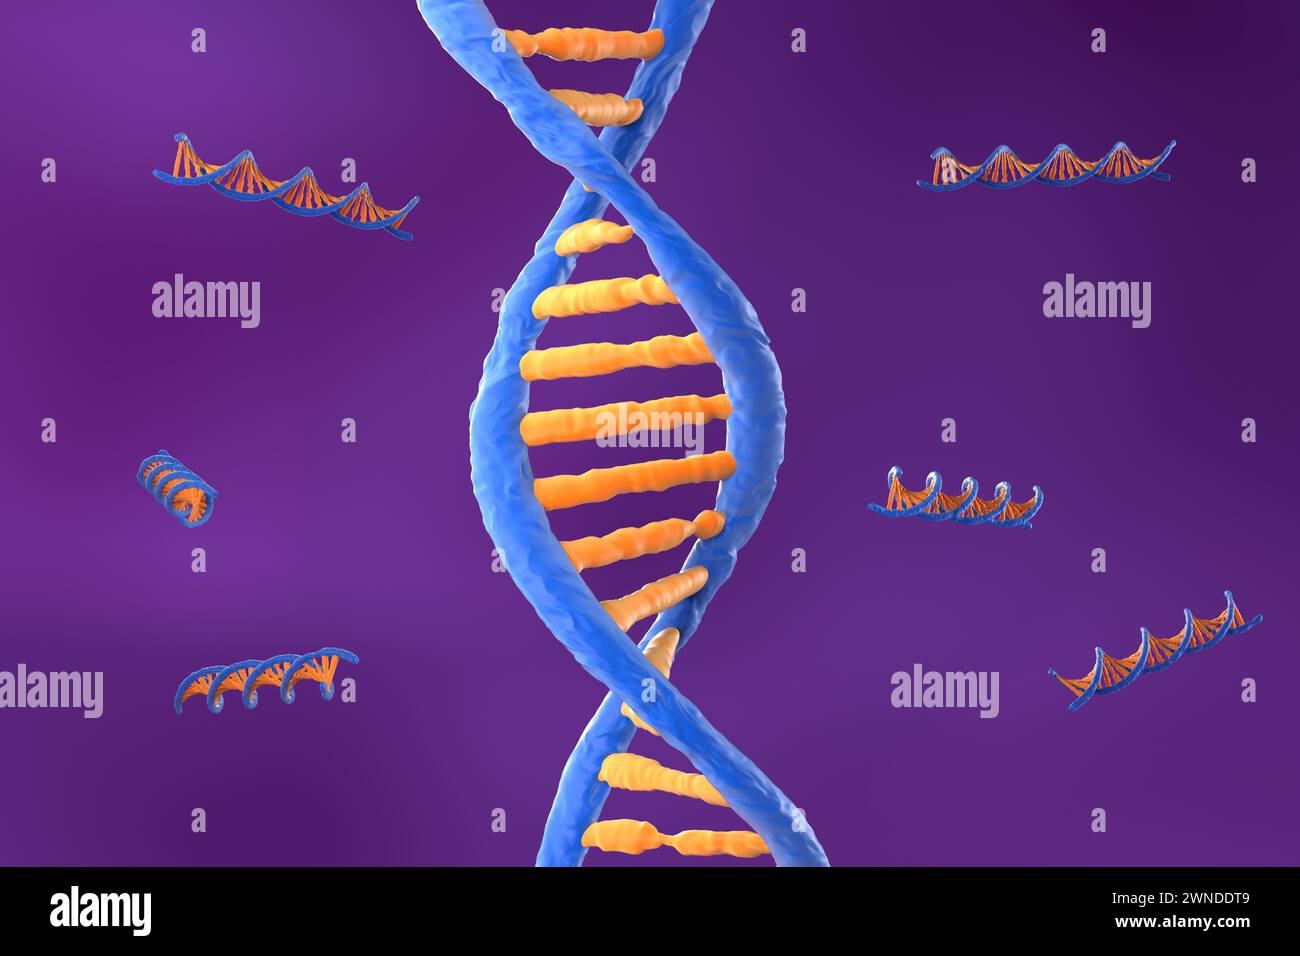 Molécule d'ADN avec la double spirale polynucléotidique - vue isométrique illustration 3D. Banque D'Images